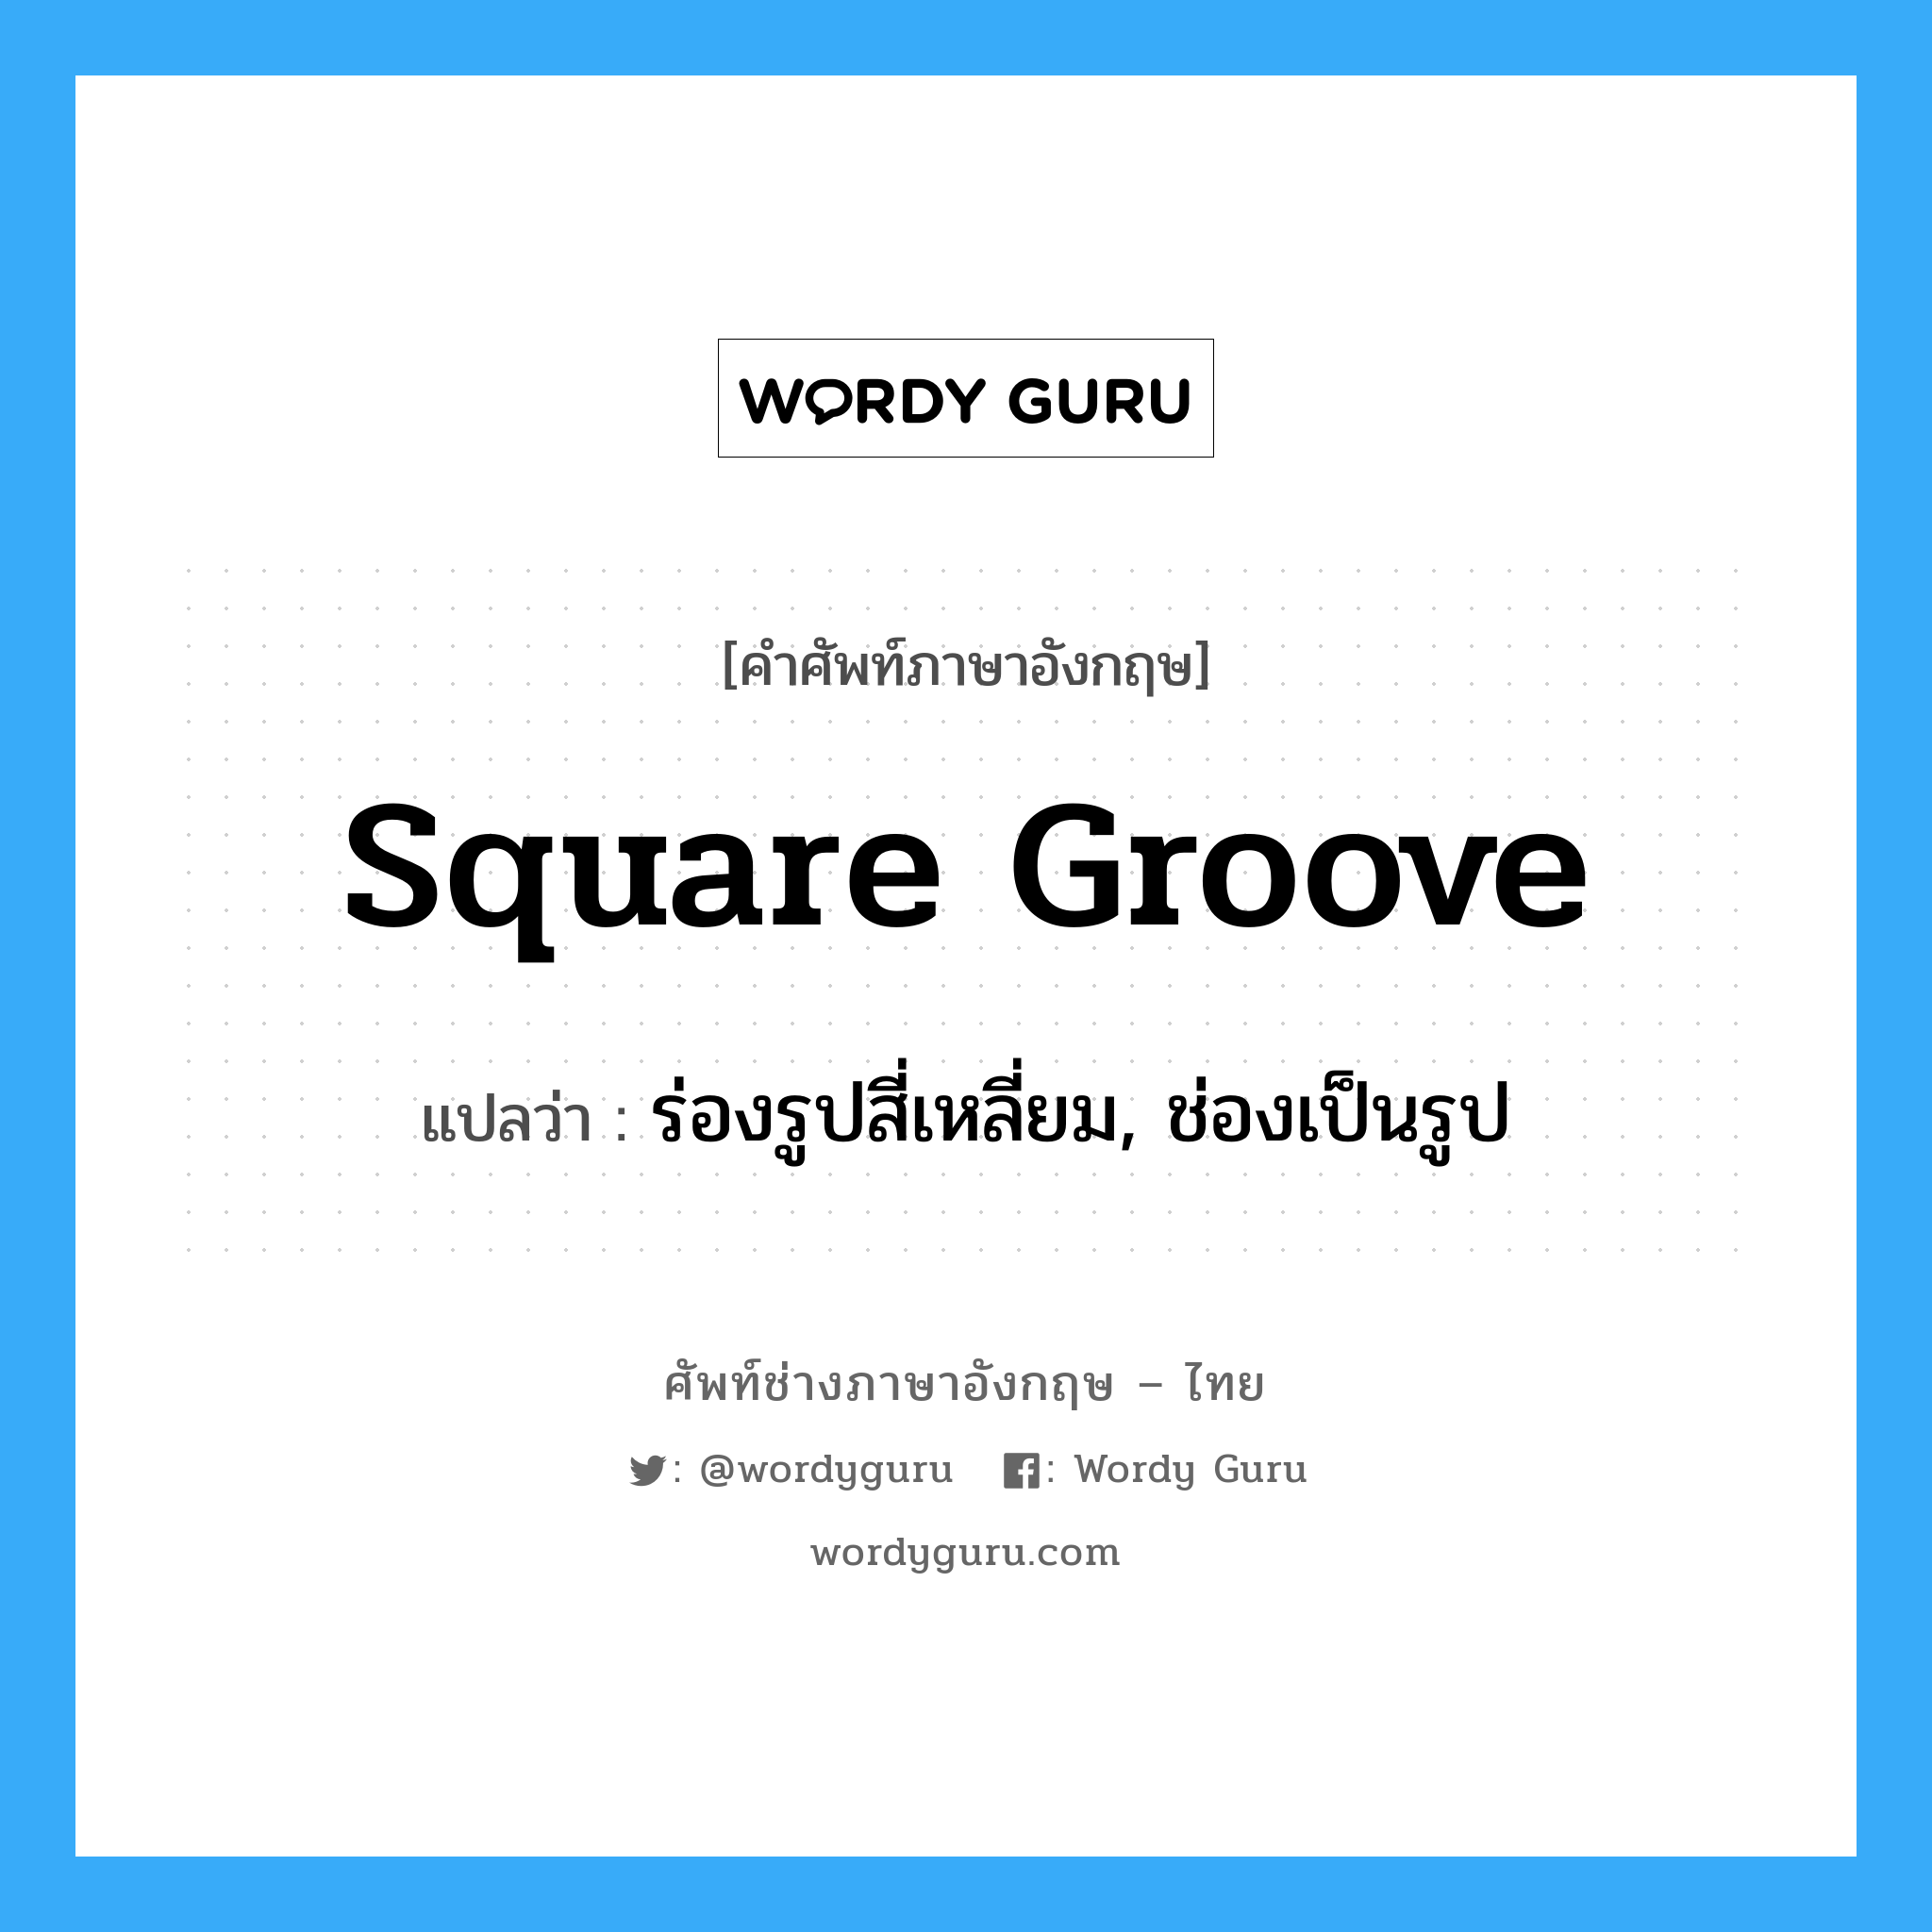 square groove แปลว่า?, คำศัพท์ช่างภาษาอังกฤษ - ไทย square groove คำศัพท์ภาษาอังกฤษ square groove แปลว่า ร่องรูปสี่เหลี่ยม, ช่องเป็นรูป